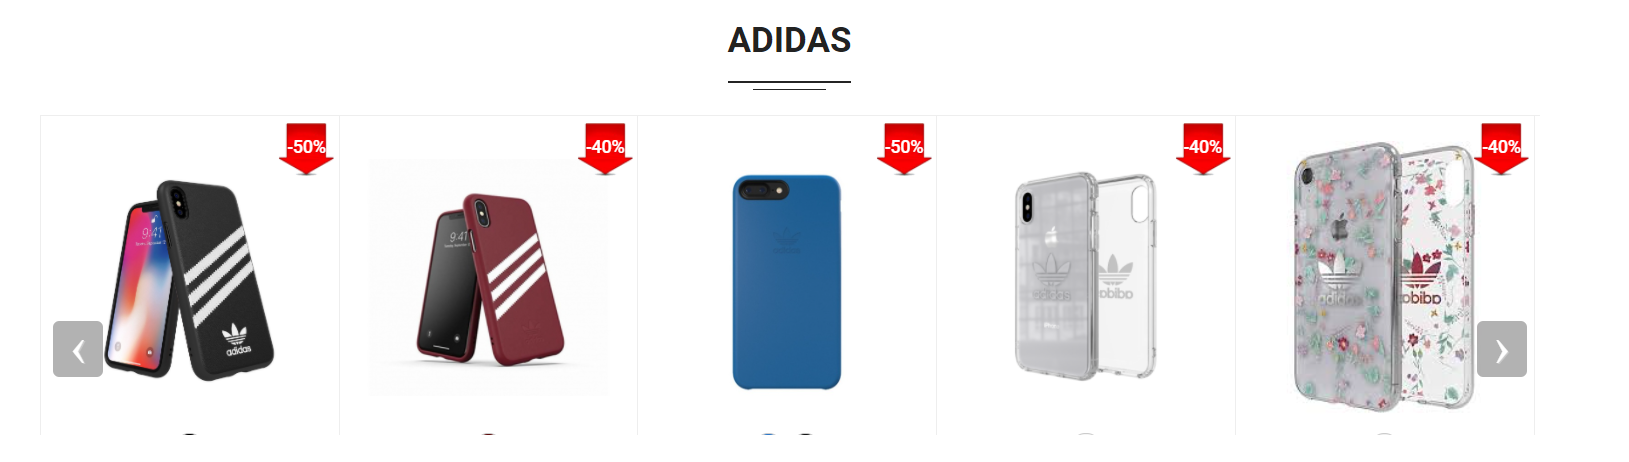 Các dòng ốp lưng của Adidas được giảm giá rất nhiều